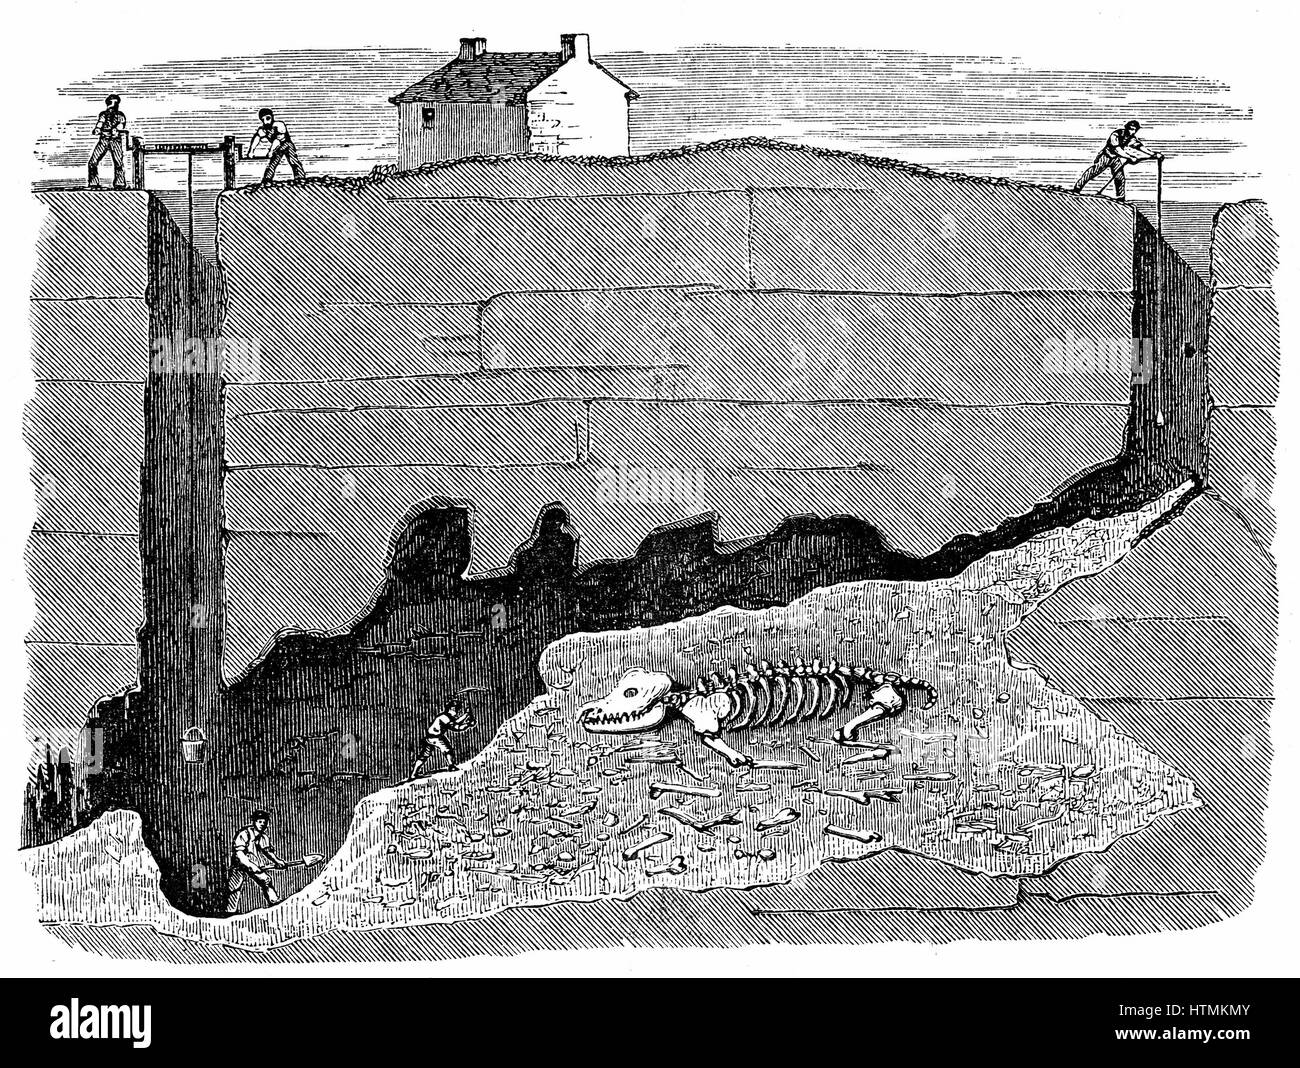 Vue en coupe transversale de Mine de plomb de rêve, près de Wirksworth, dans le Derbyshire, montrant le fonctionnement et la position dans laquelle squelette de rhinoceros a été découvert. La gravure sur bois 1881 Banque D'Images